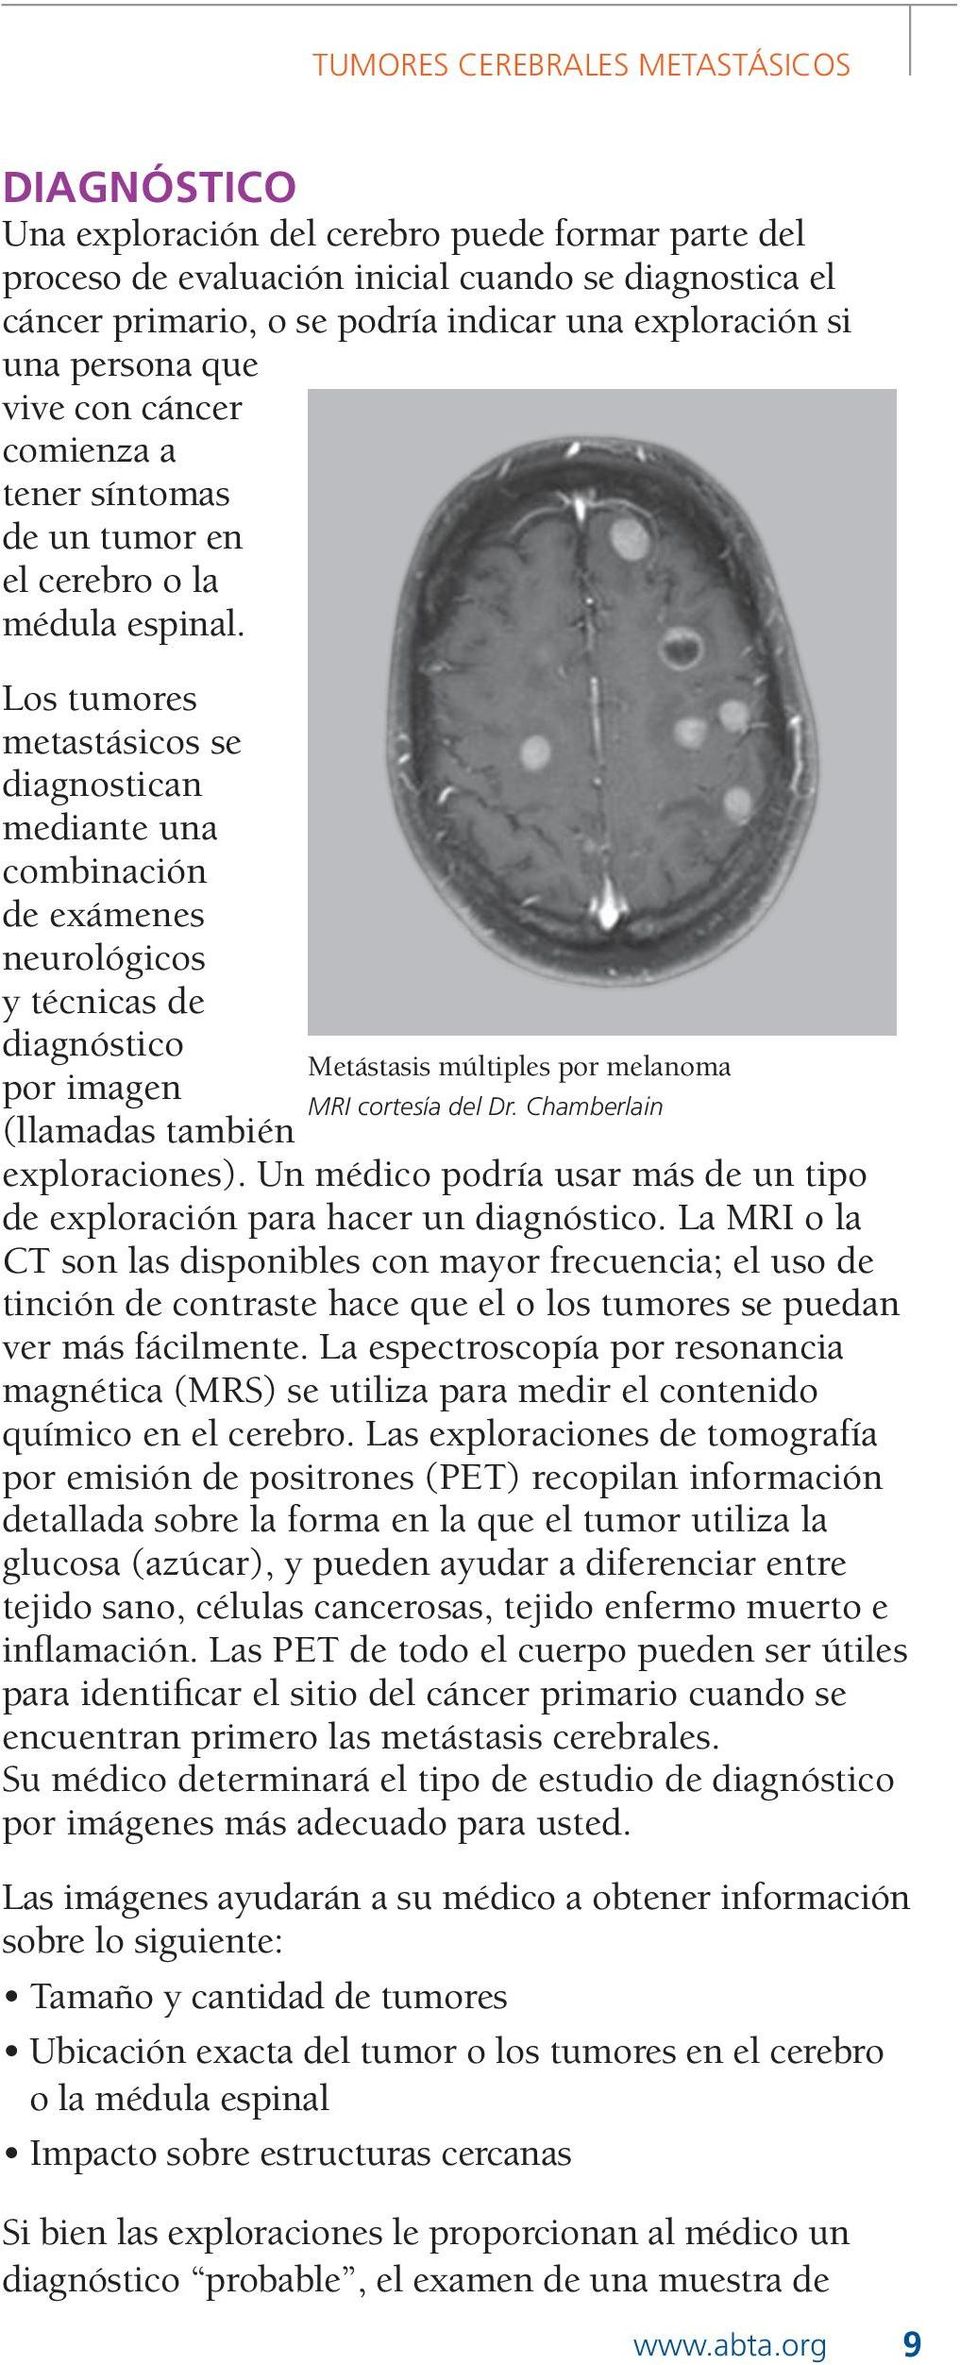 Los tumores metastásicos se diagnostican mediante una combinación de exámenes neurológicos y técnicas de diagnóstico Metástasis múltiples por melanoma por imagen MRI cortesía del Dr.